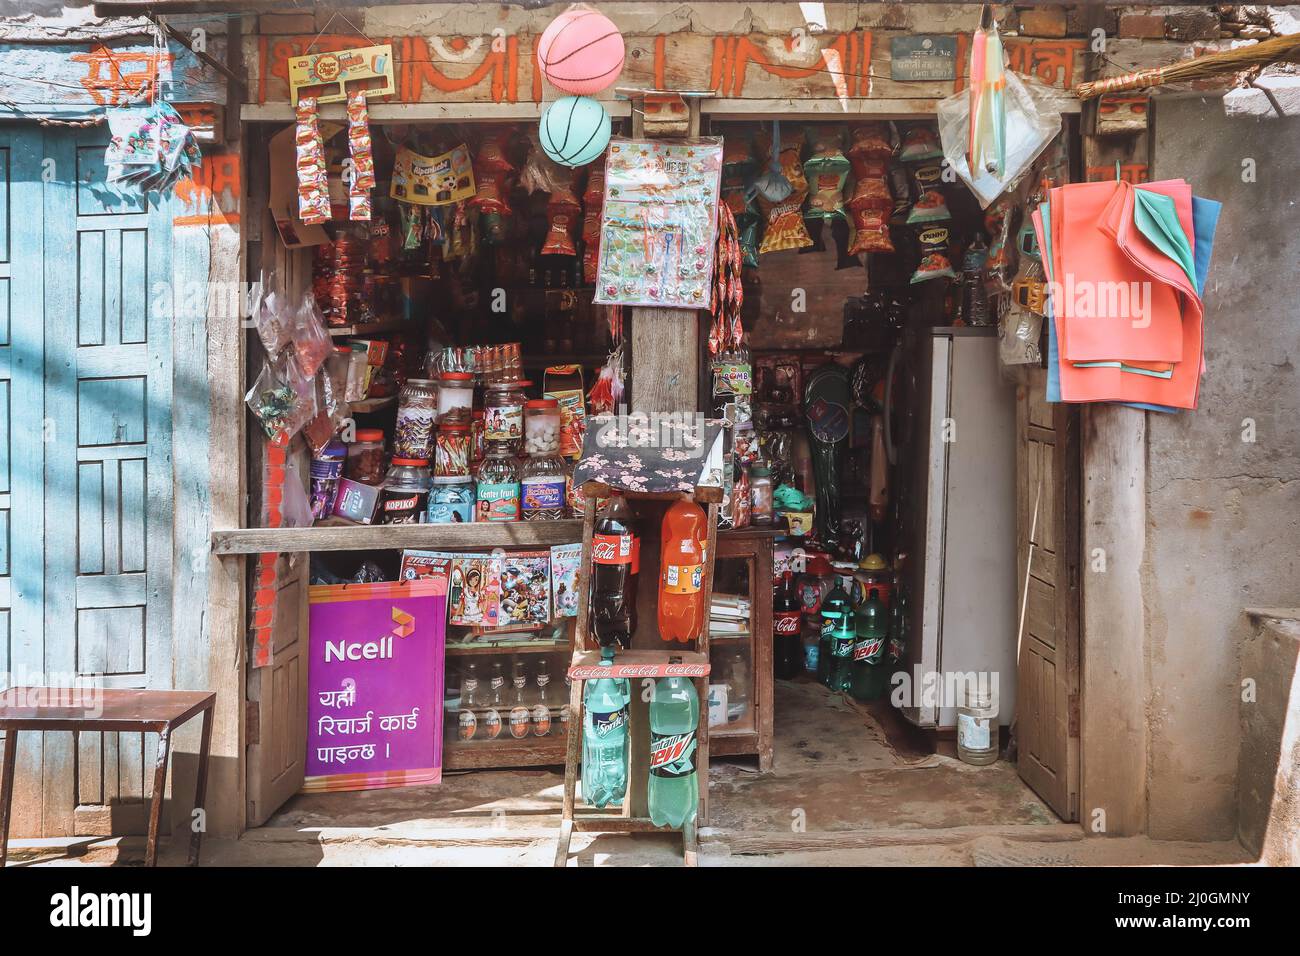 Petite boutique dans la ville de Panauti, au Népal - Panauti est une vieille ville de Newari juste à l'extérieur de la vallée de Katmandou Banque D'Images